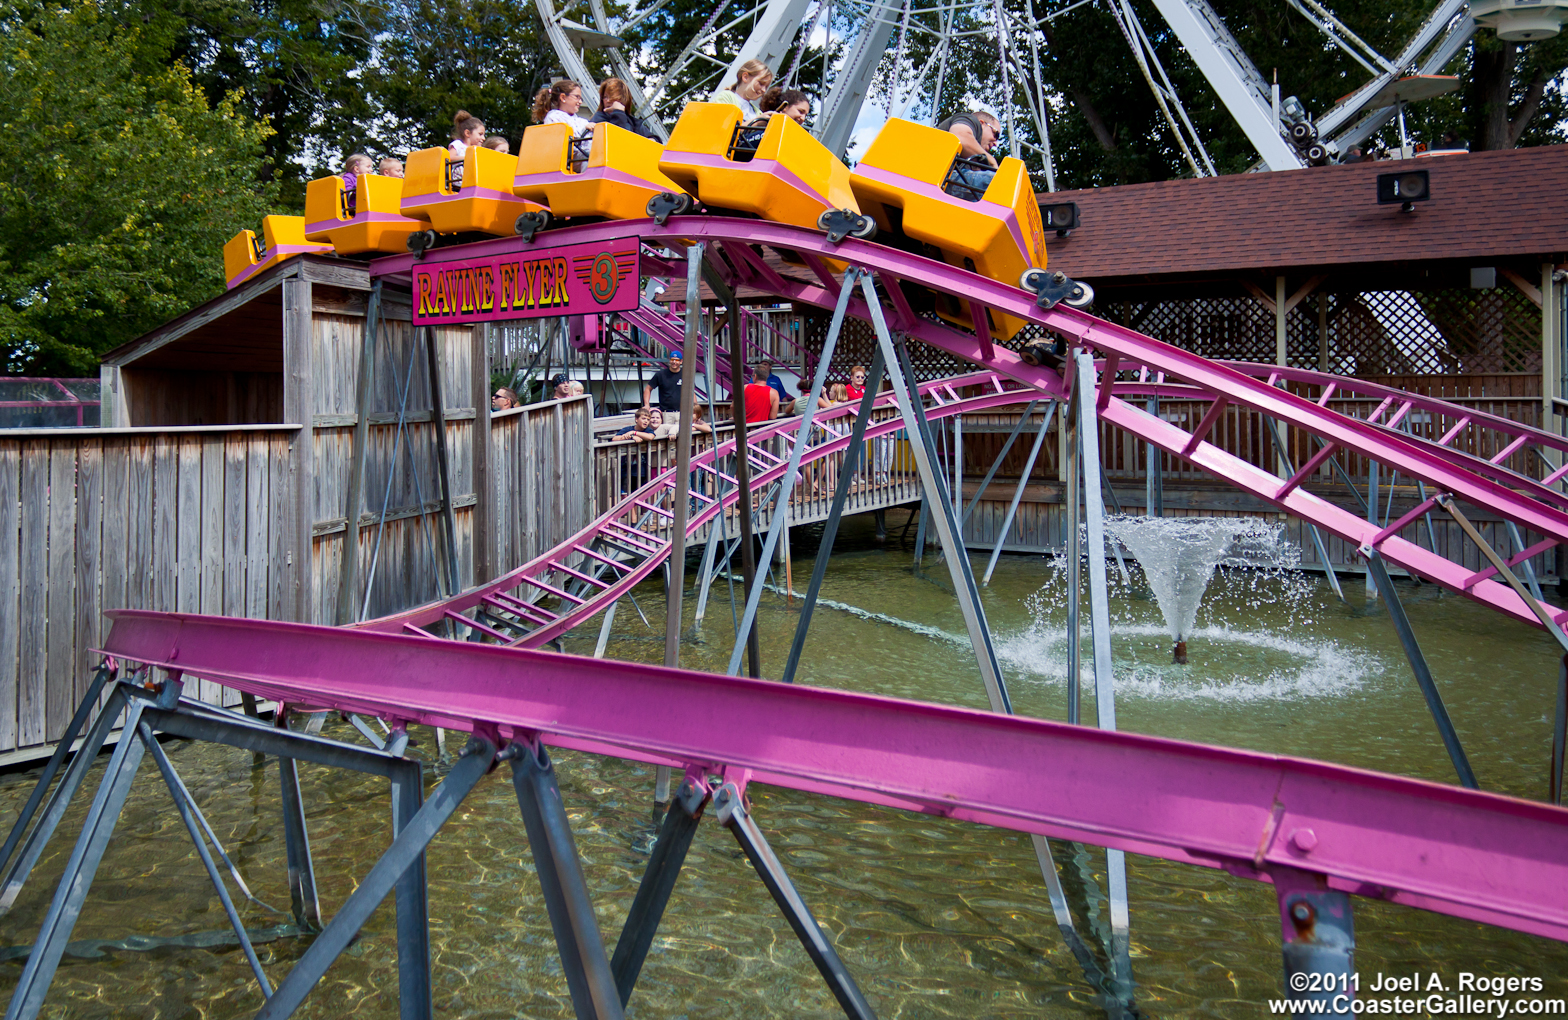 Ravine Flyer 3 roller coaster built by Miler